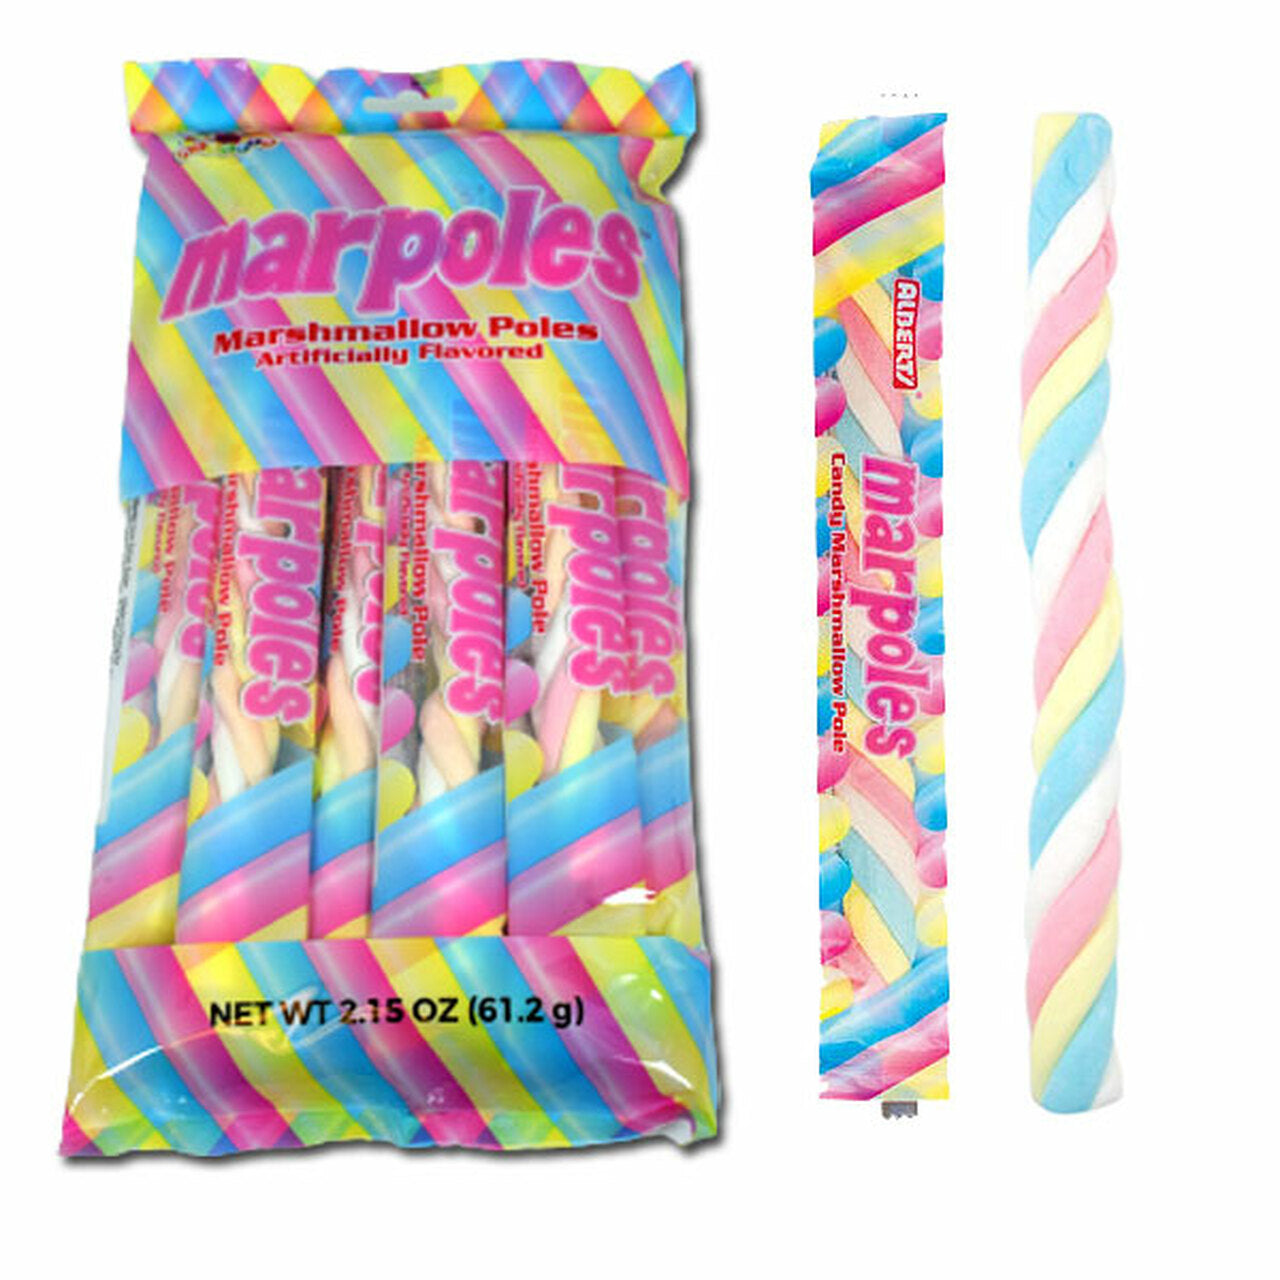 Marpoles Marshmallow Poles